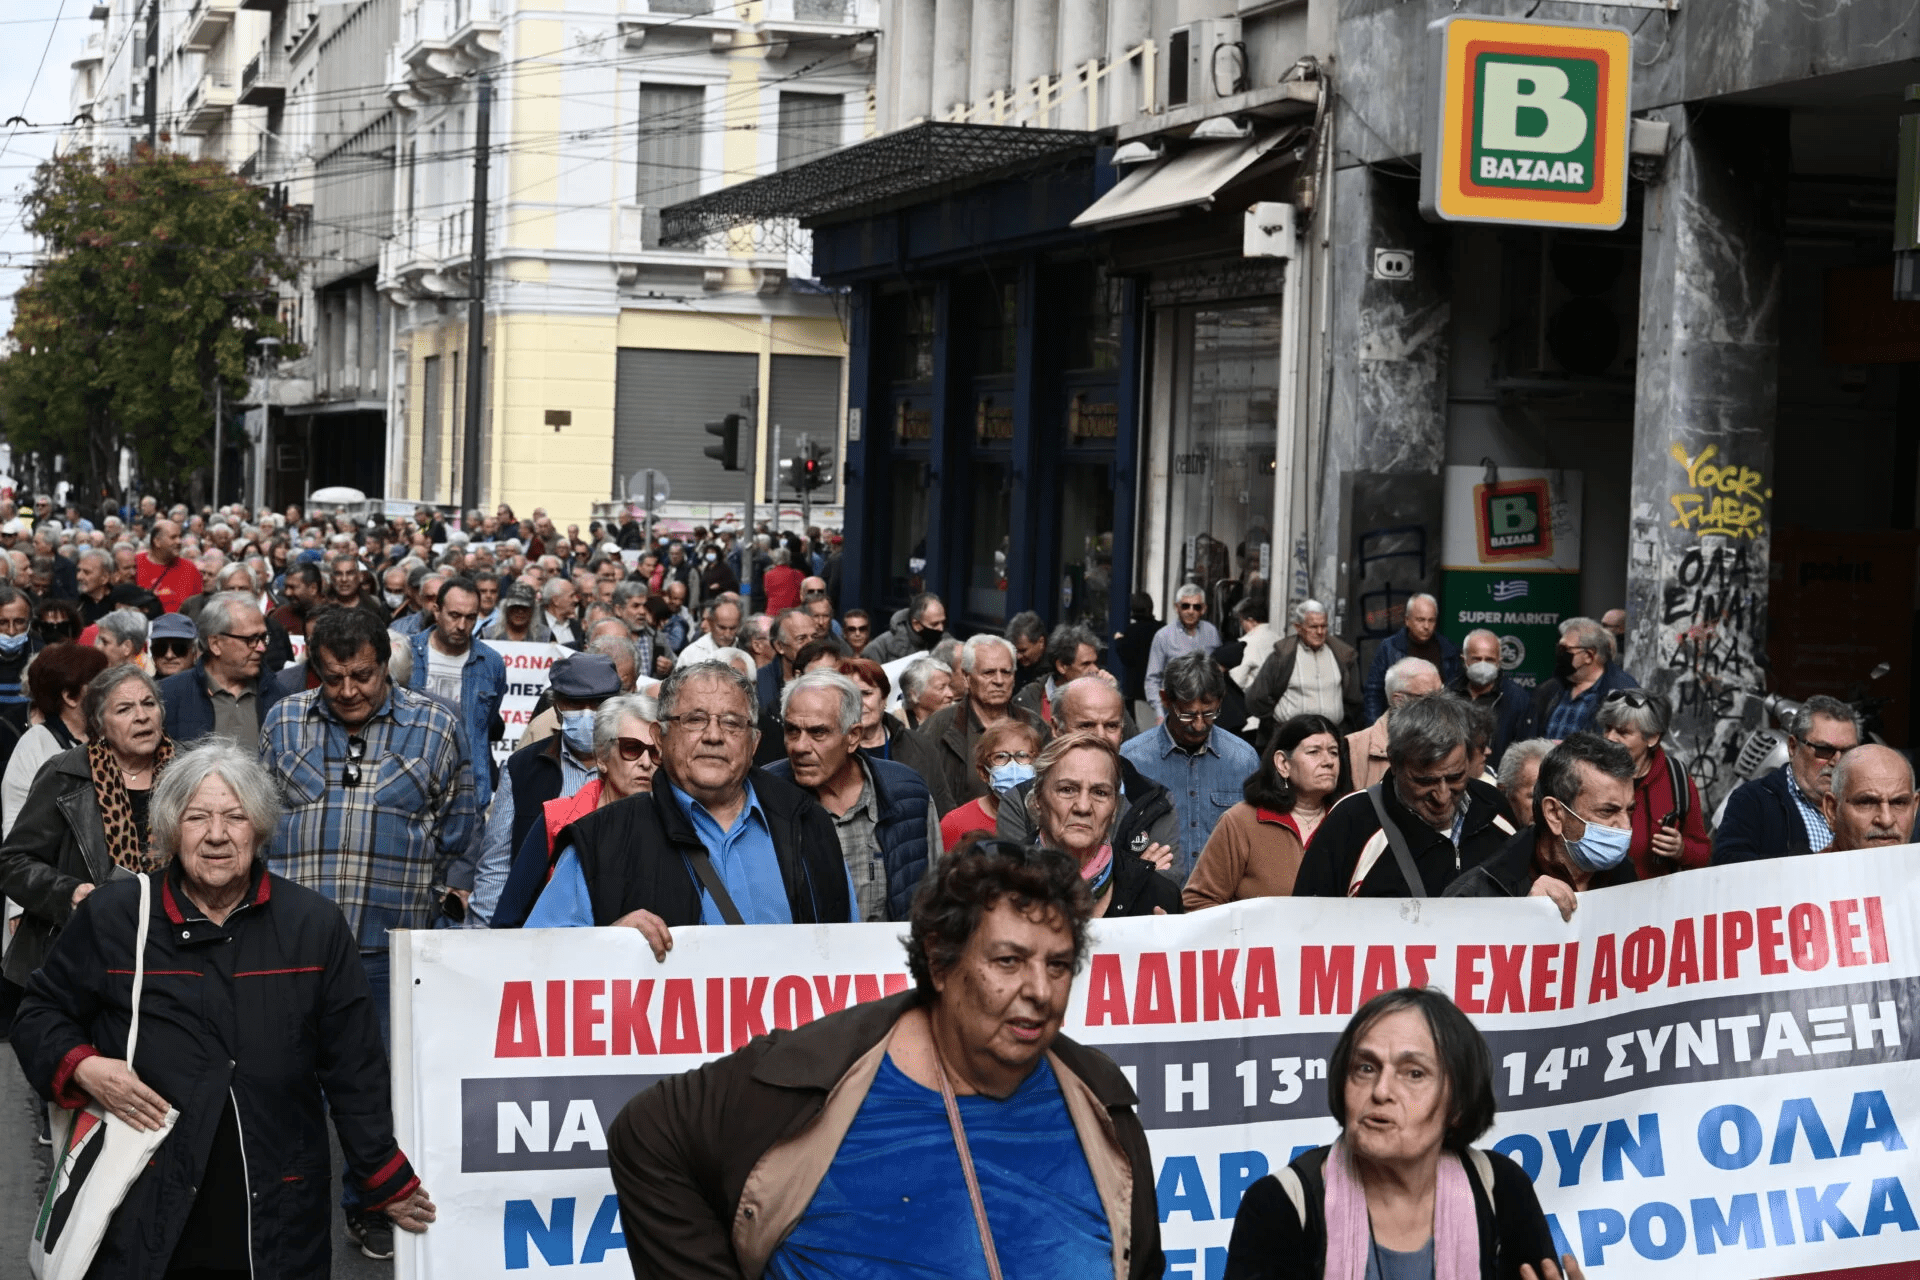 Αυξήσεις για μια αξιοπρεπή ζωή ζητούν οι περήφανοι συνταξιούχοι - Εντυπωσιακά μεγάλη πορεία στο κέντρο της Αθήνας.